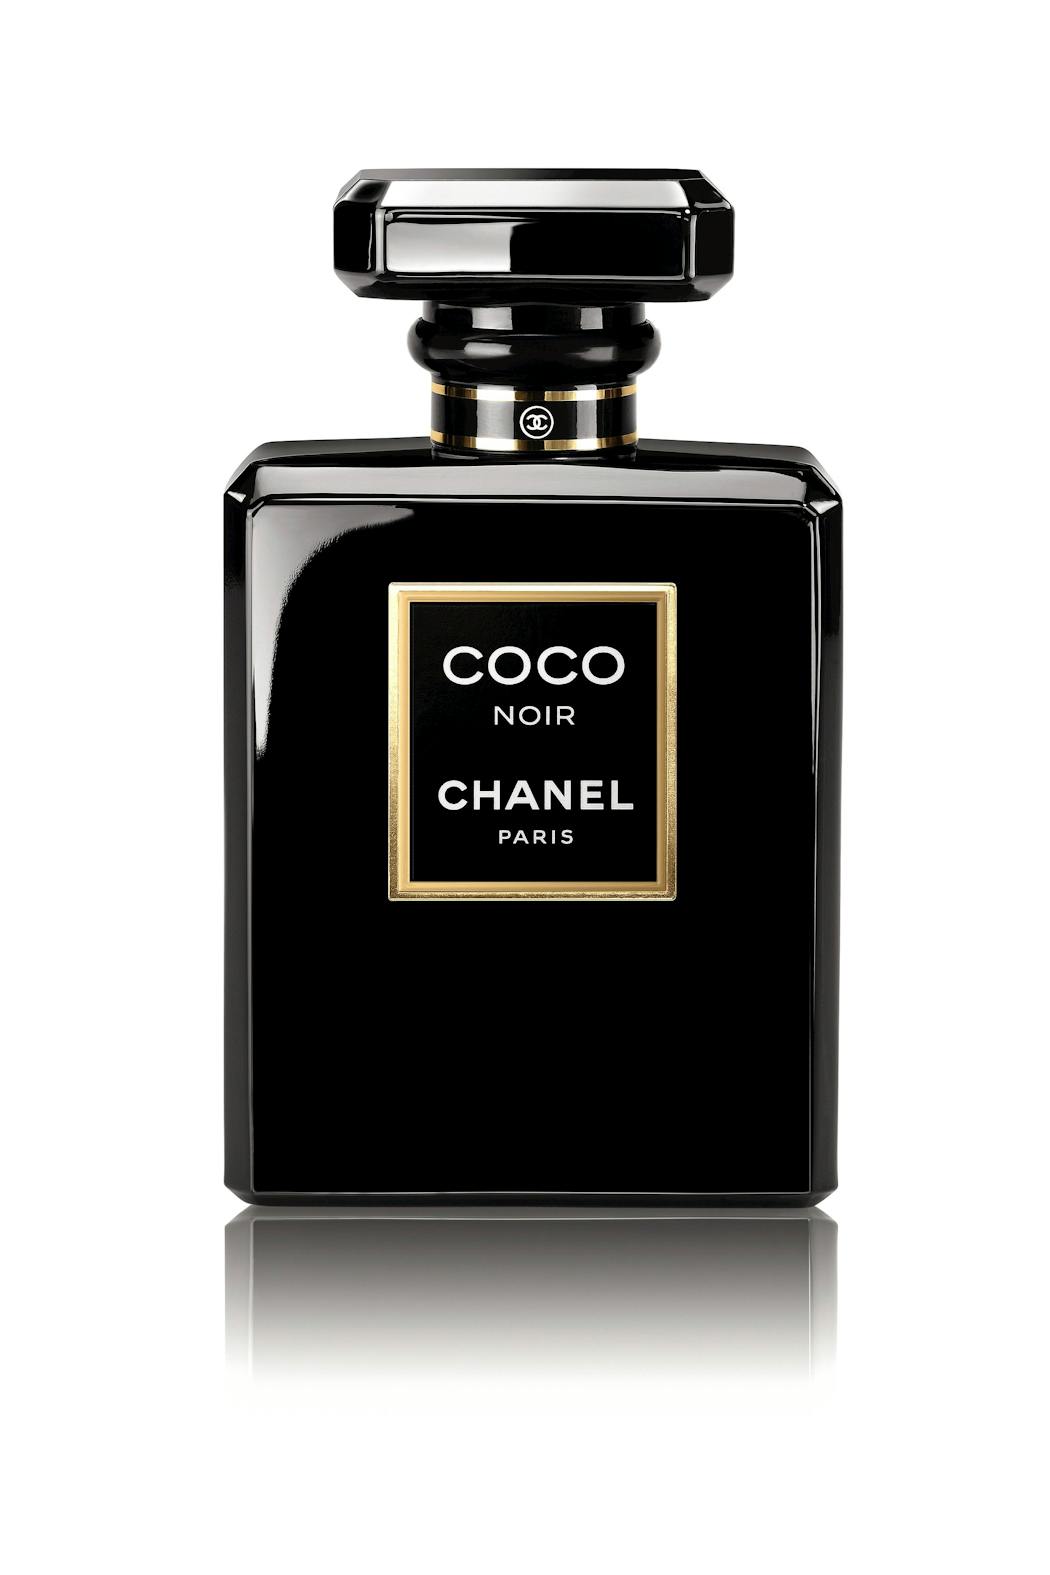 Coco Noir, Chanel